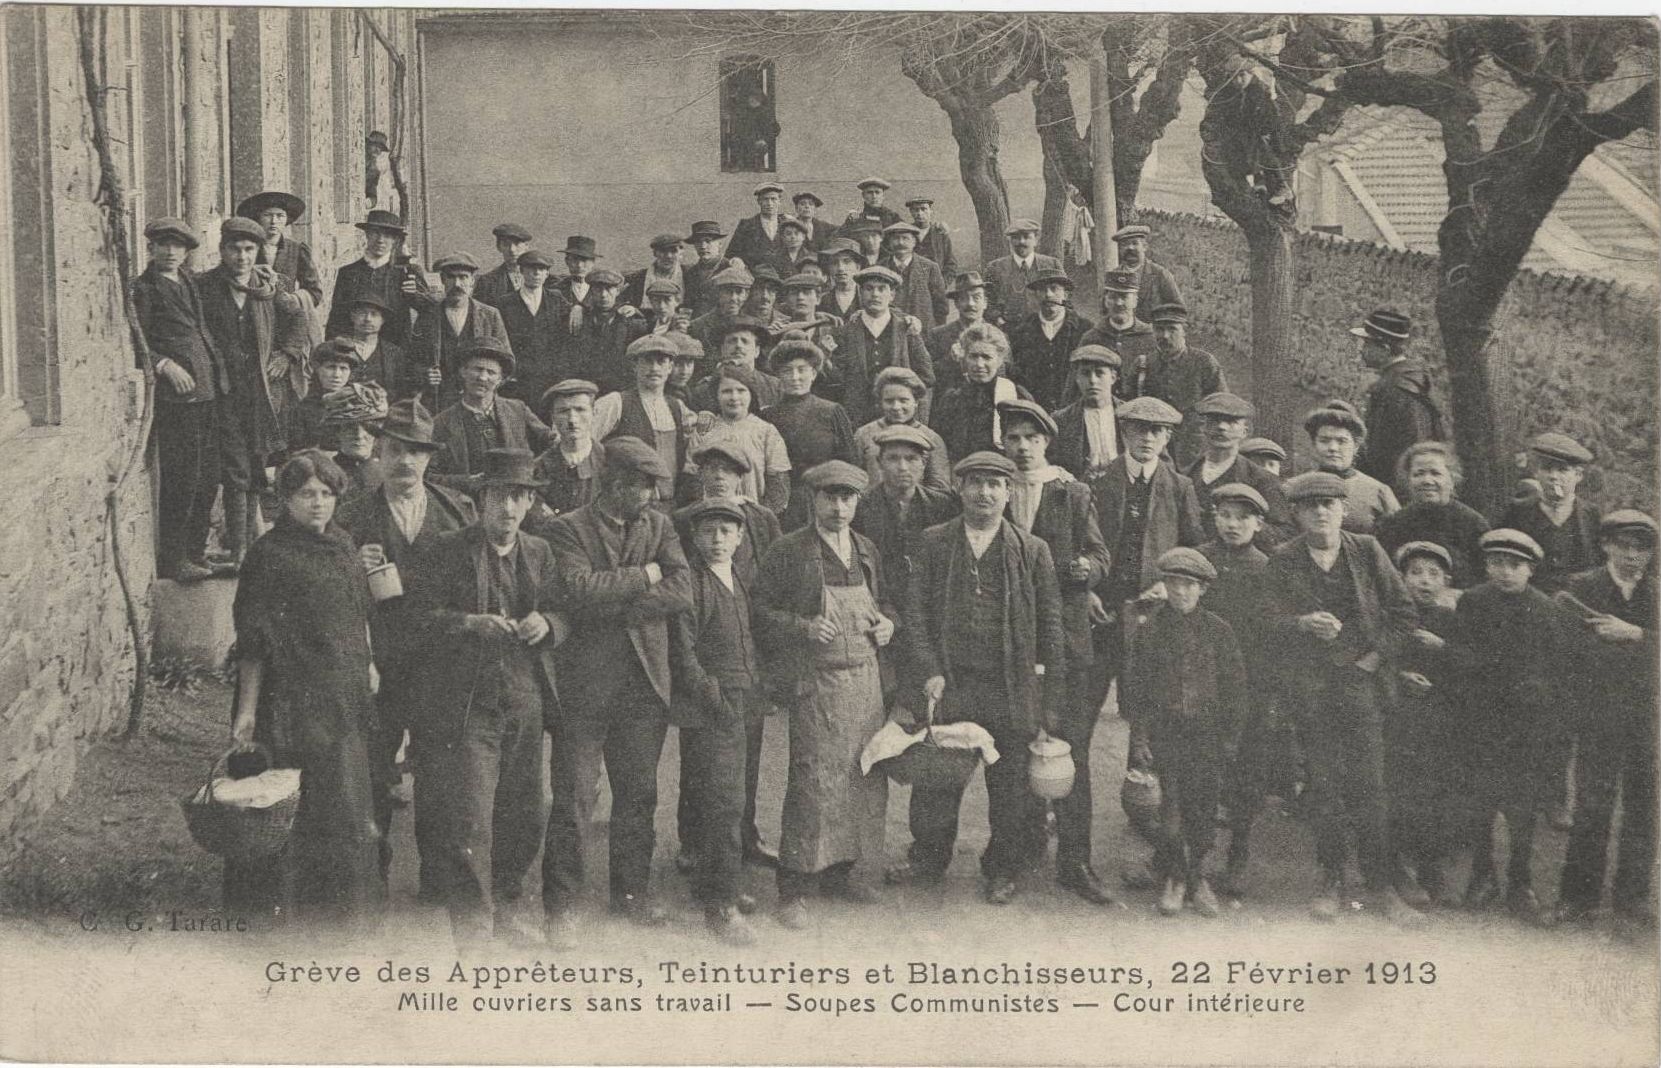 Grève des apprêteurs, teinturiers, blanchisseurs : carte postale NB (22/02/1913, cote : 4FI/5377)